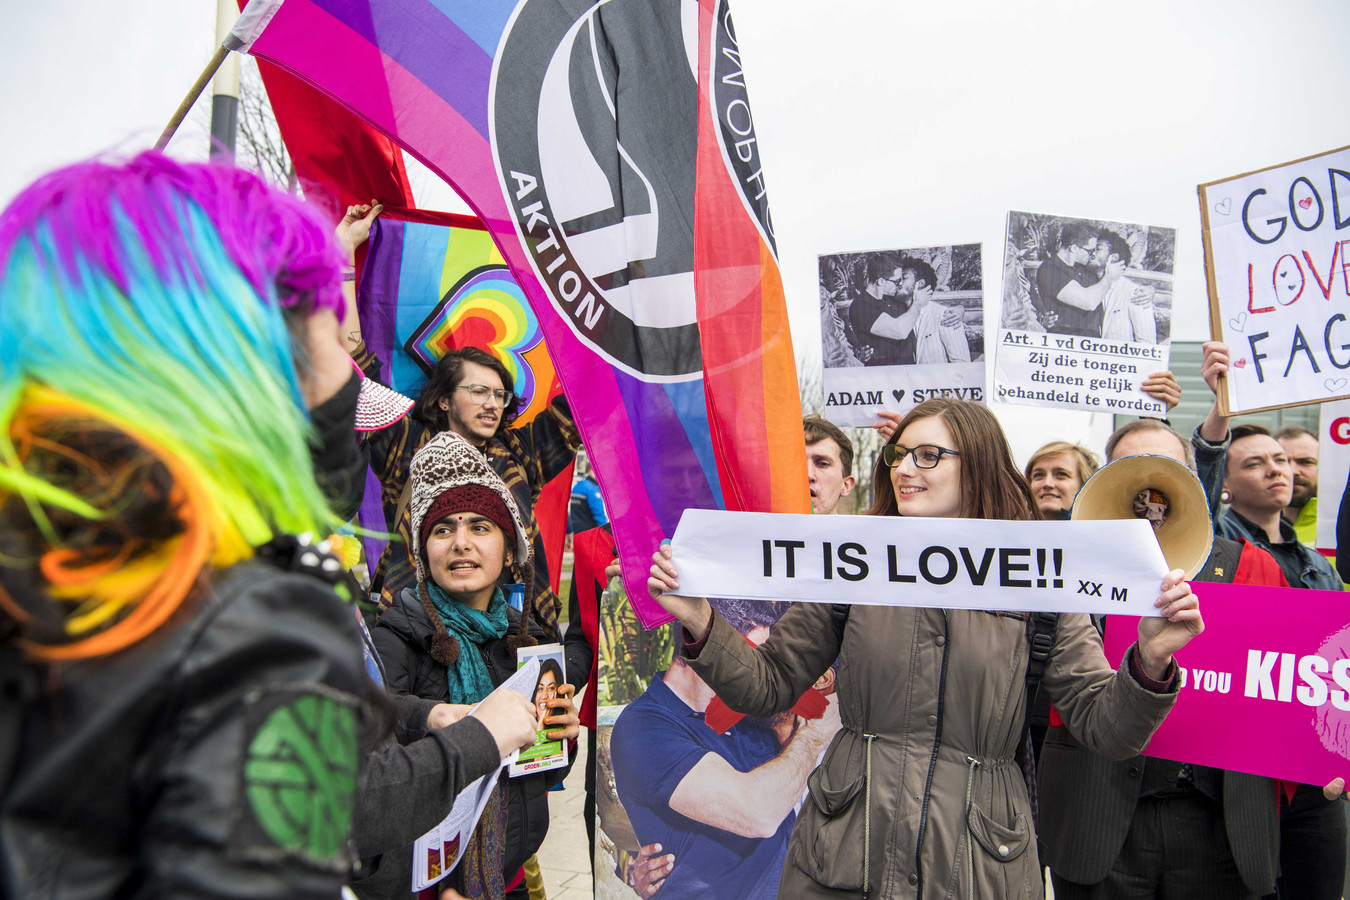 Regan onduidelijk Pelmel Nederland is alleen tolerant als je homo-zijn promoot' | Foto | AD.nl